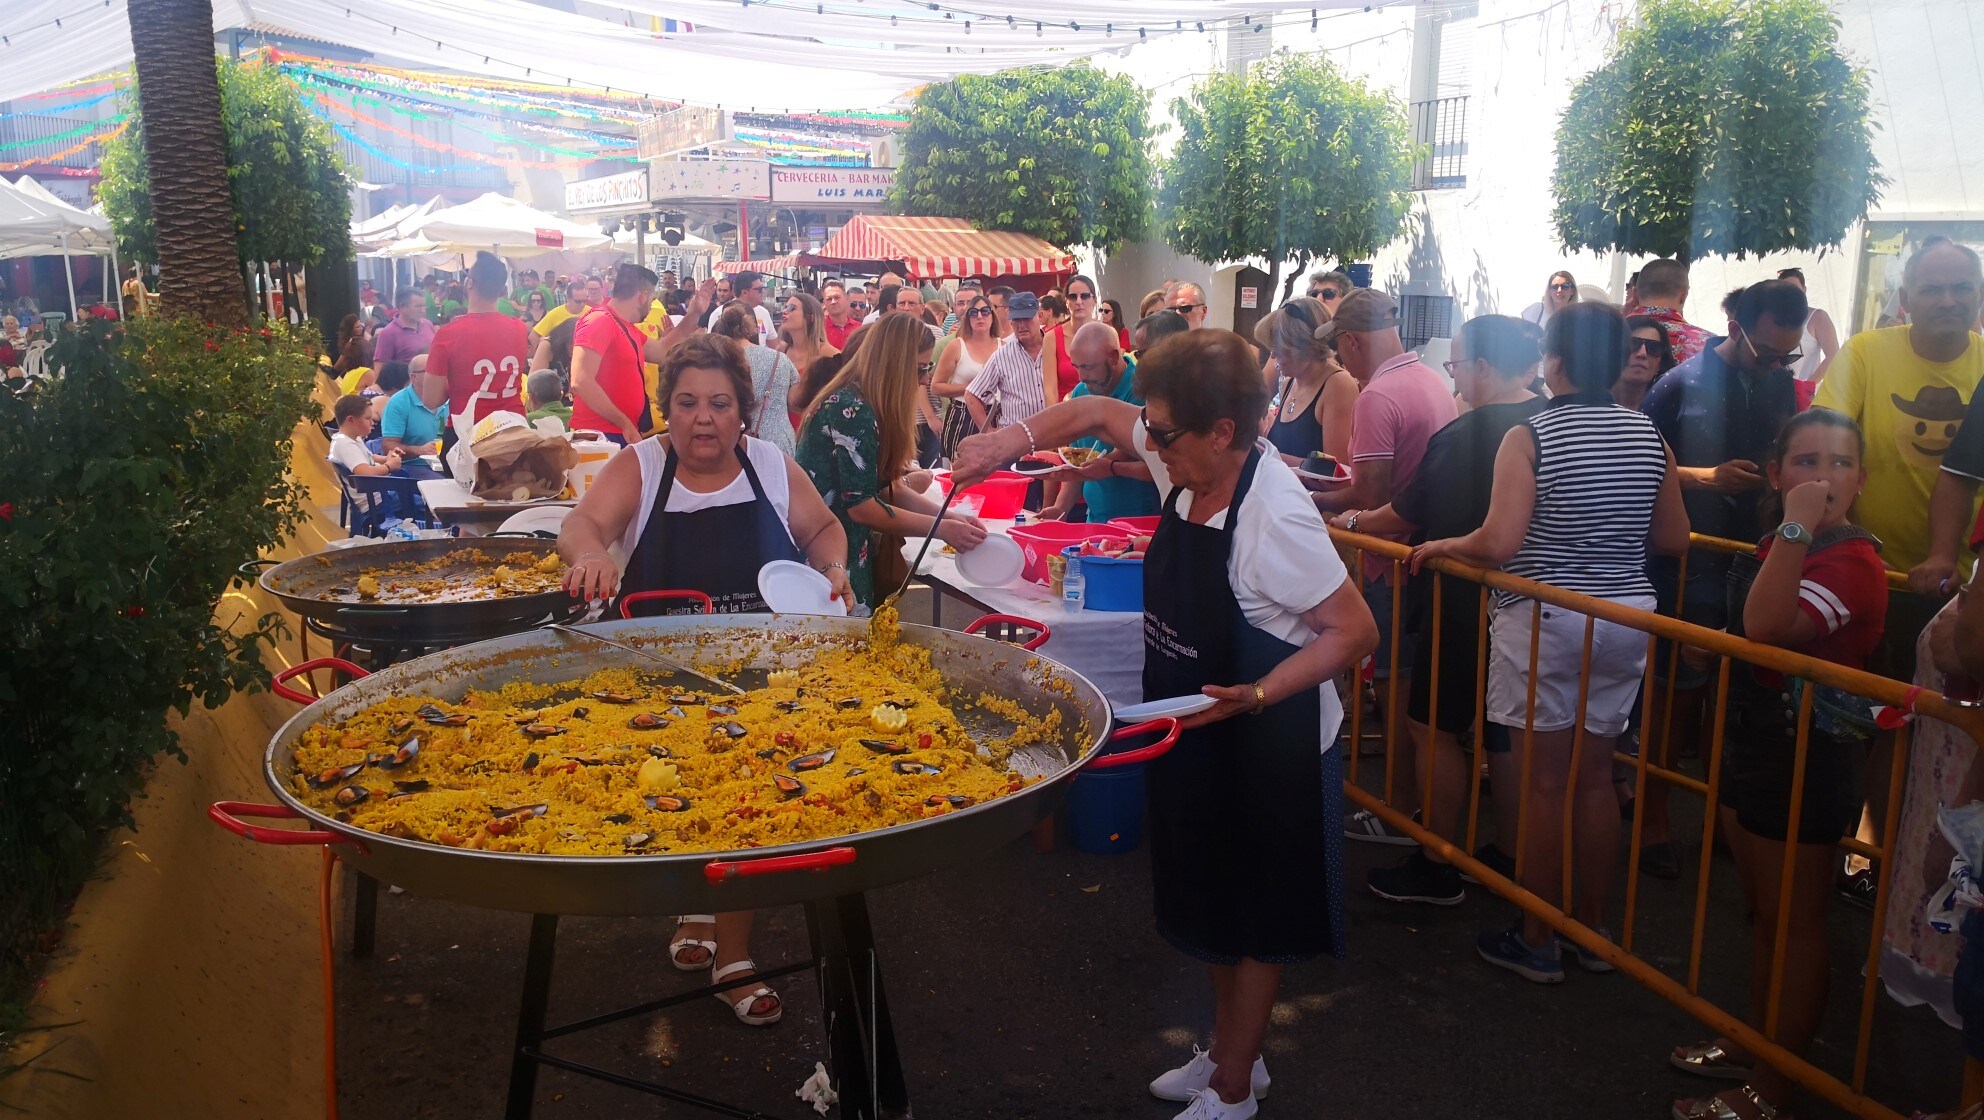 Algunas imágenes del viernes de las Ferias y Fiestas de San Bartolomé 2019 (23-08-2019)